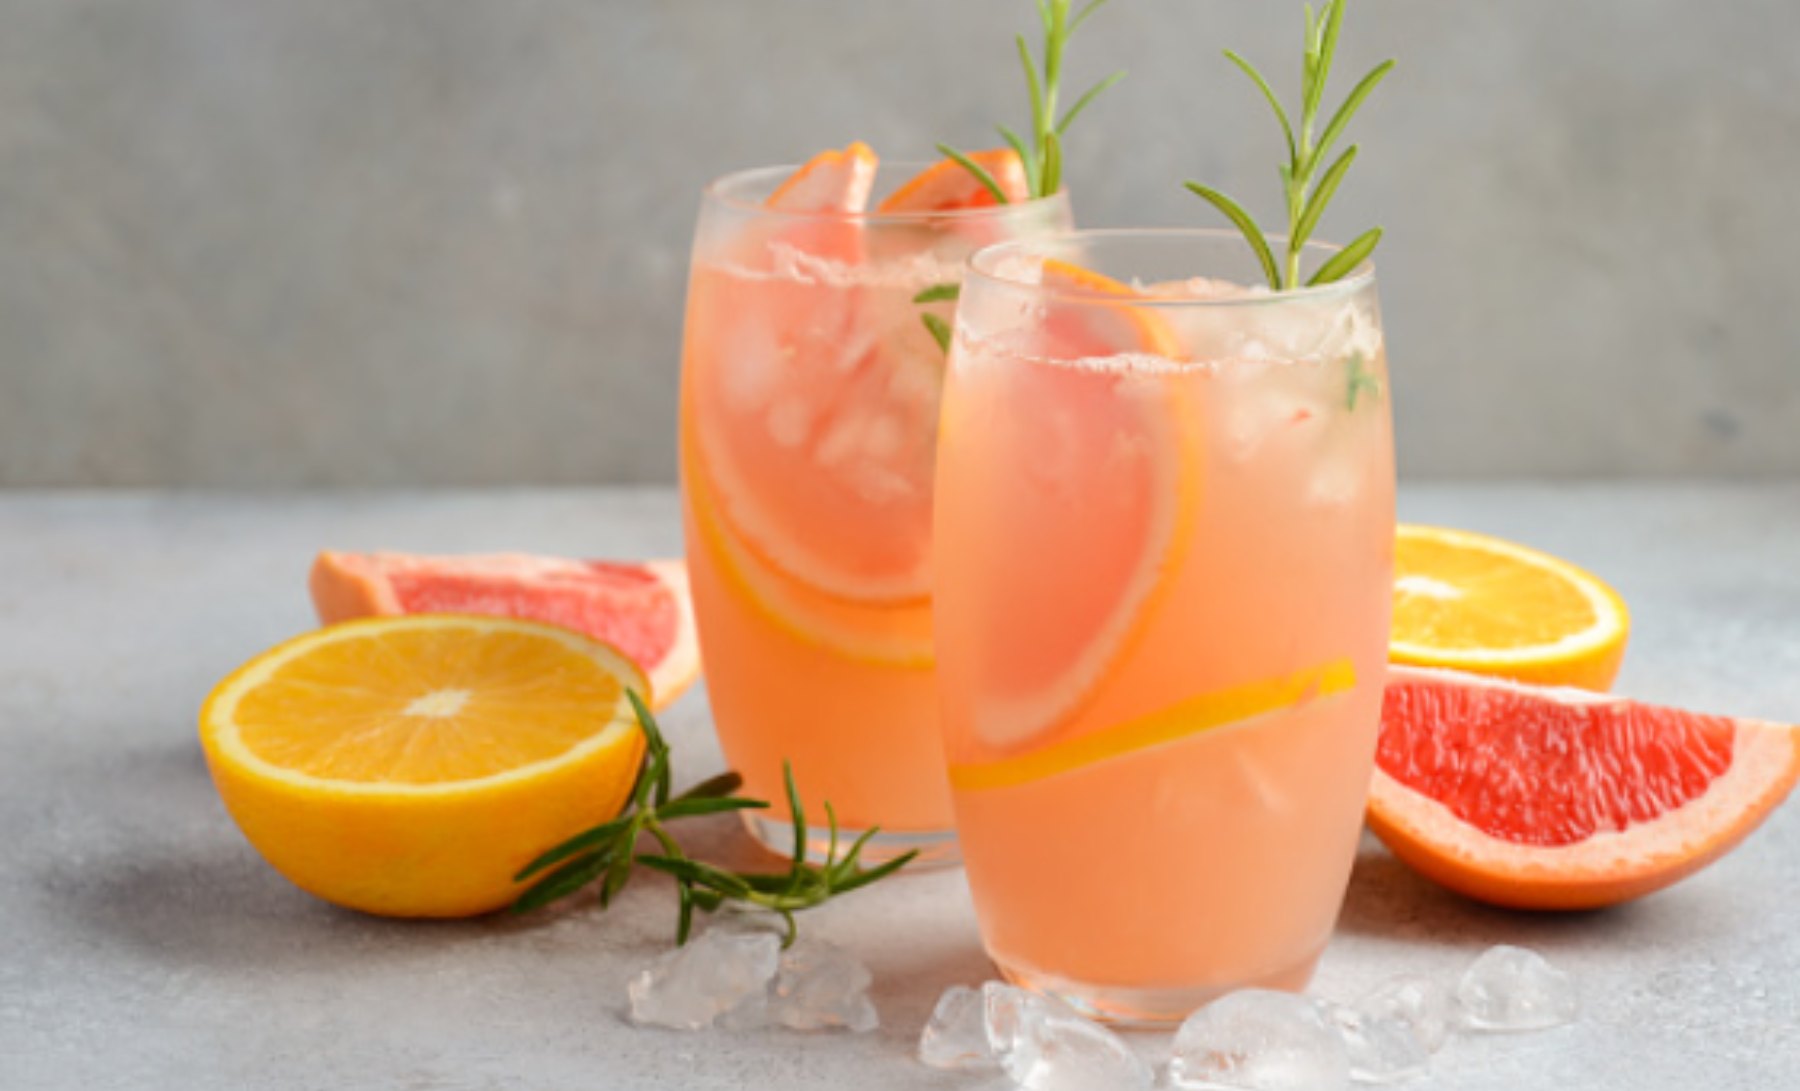 El cóctel perfecto para los amantes del vodka y la naranja